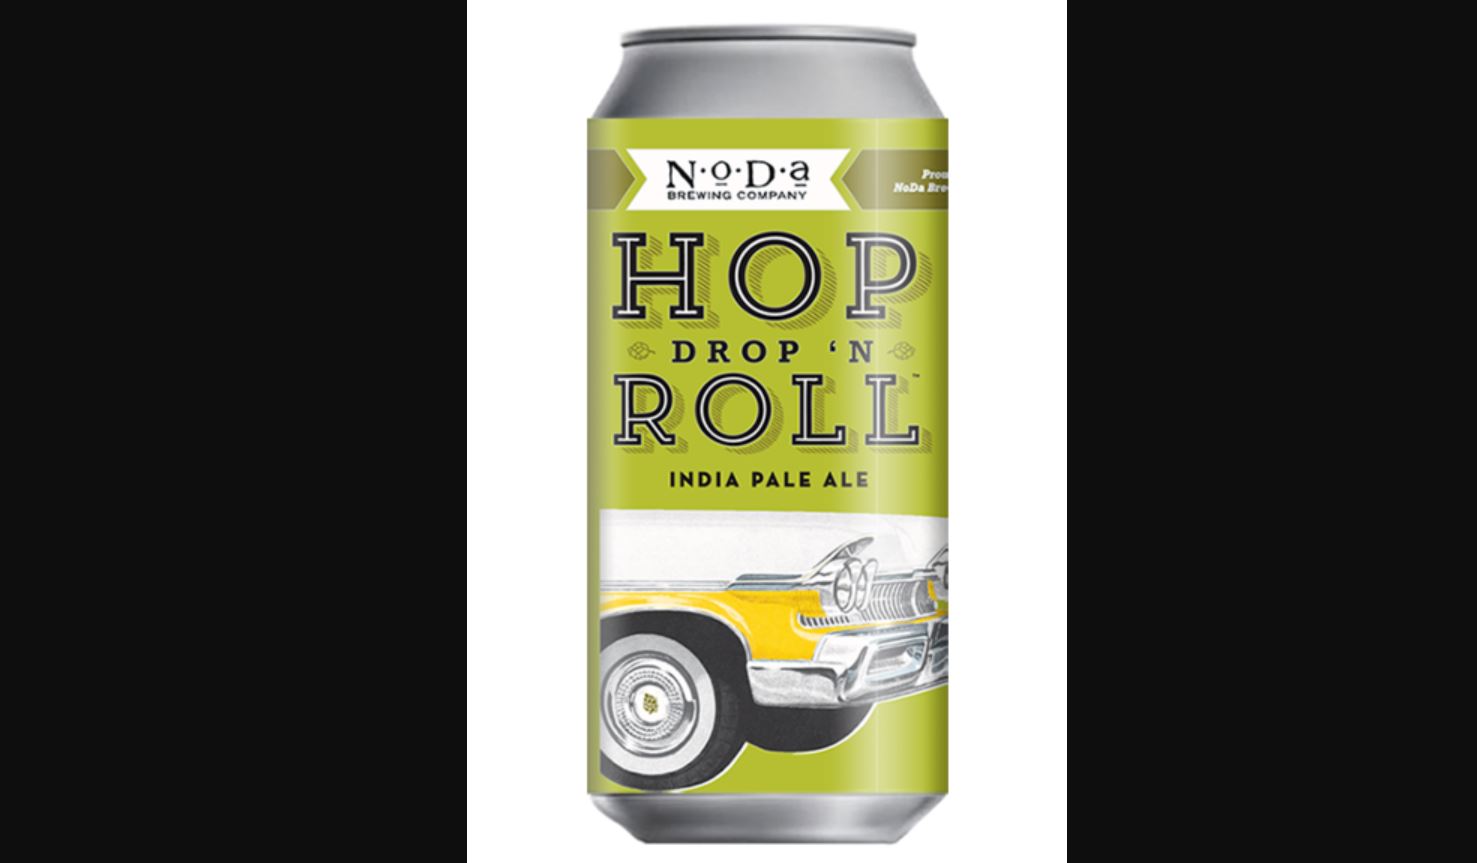 Noda Hop Drop N' Roll